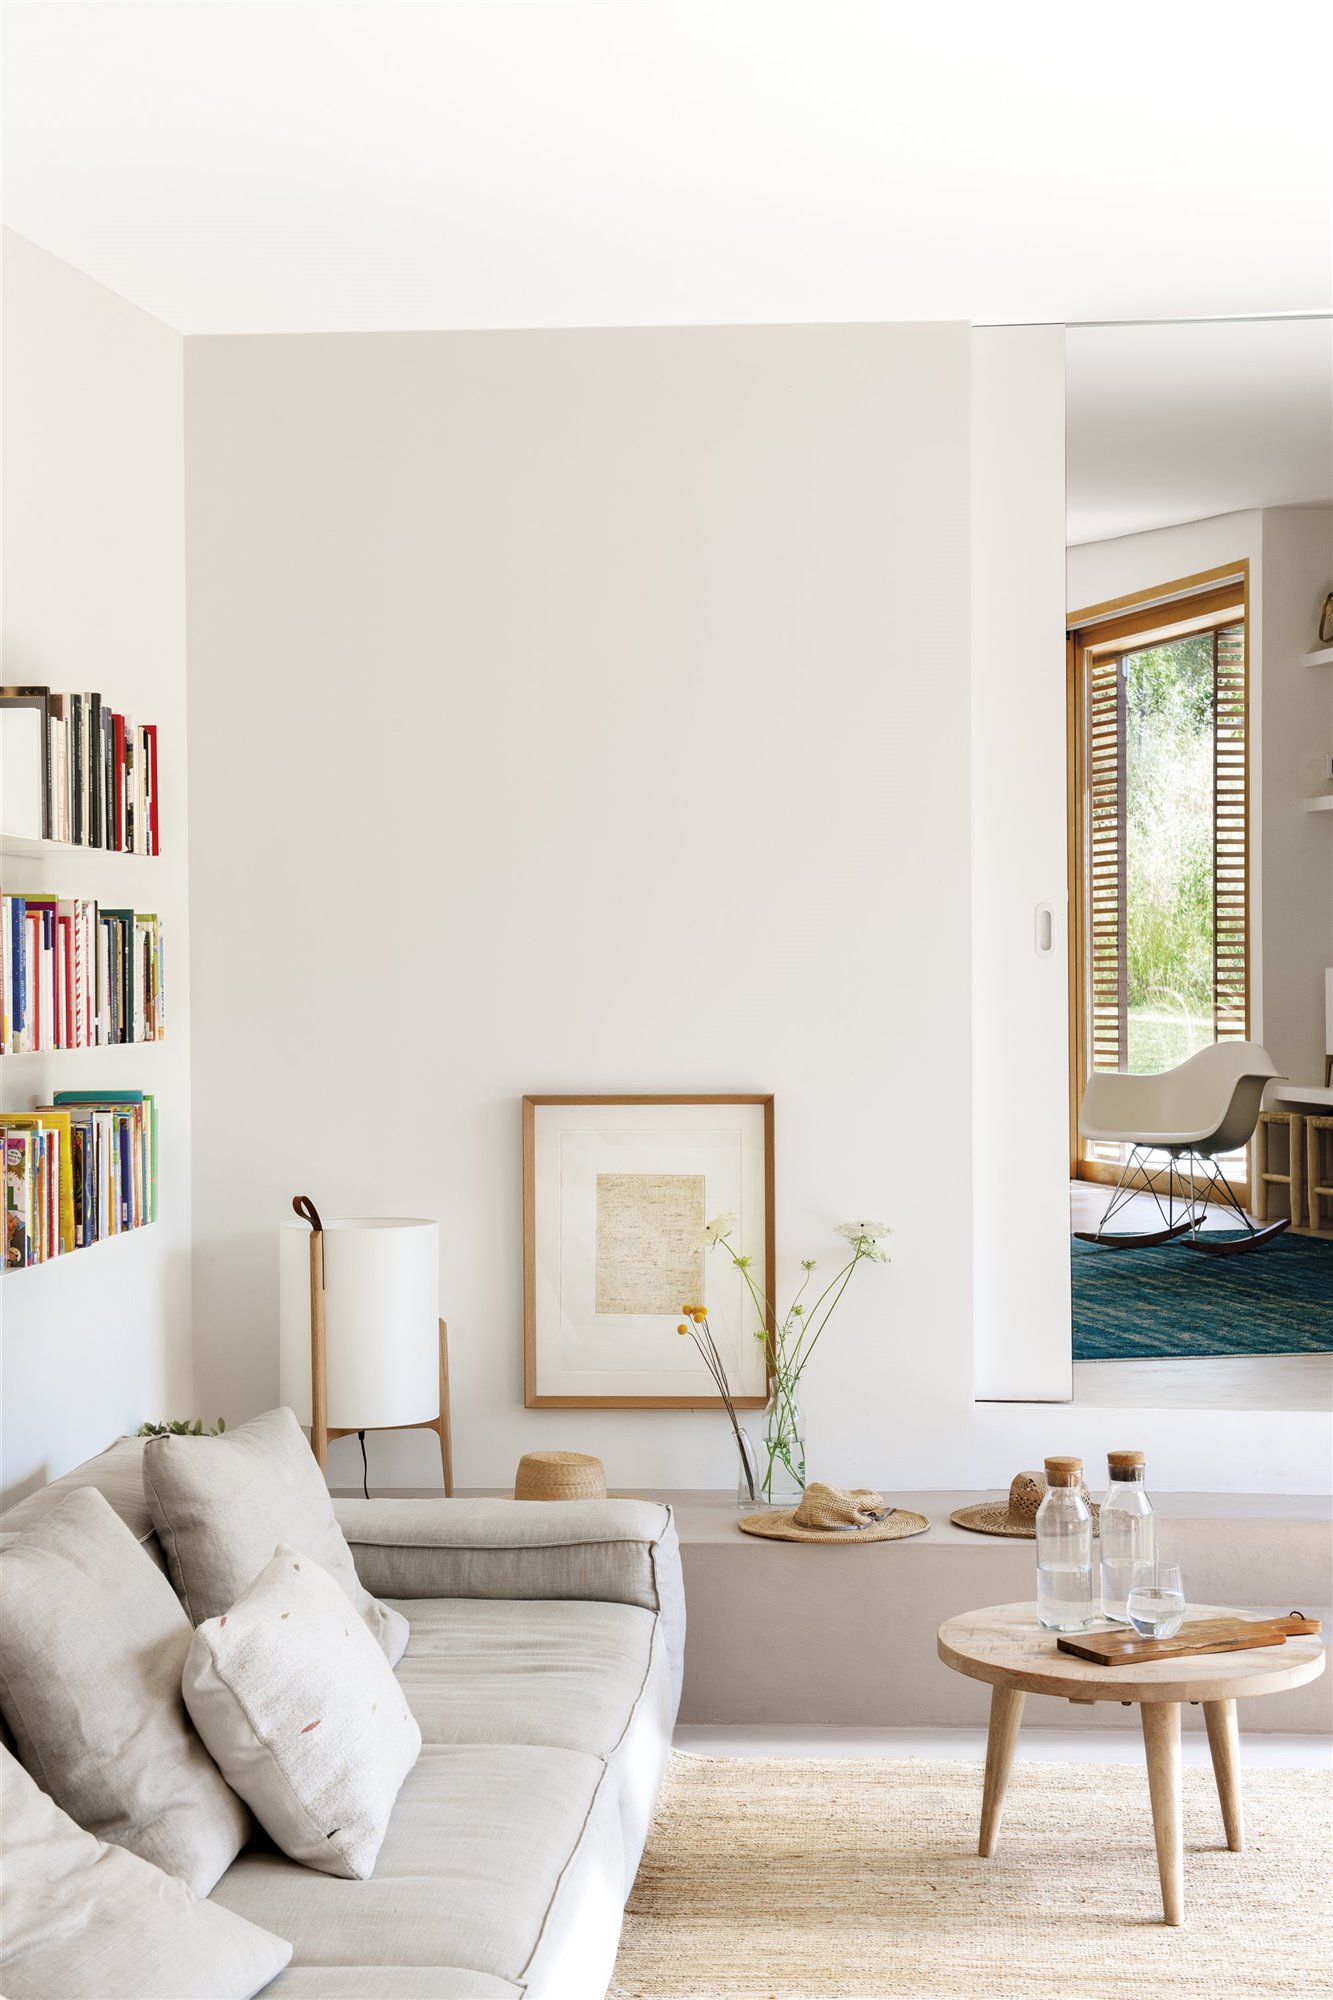 salon con sofa gris y lampara blanca de una casa moderna foto pere peris